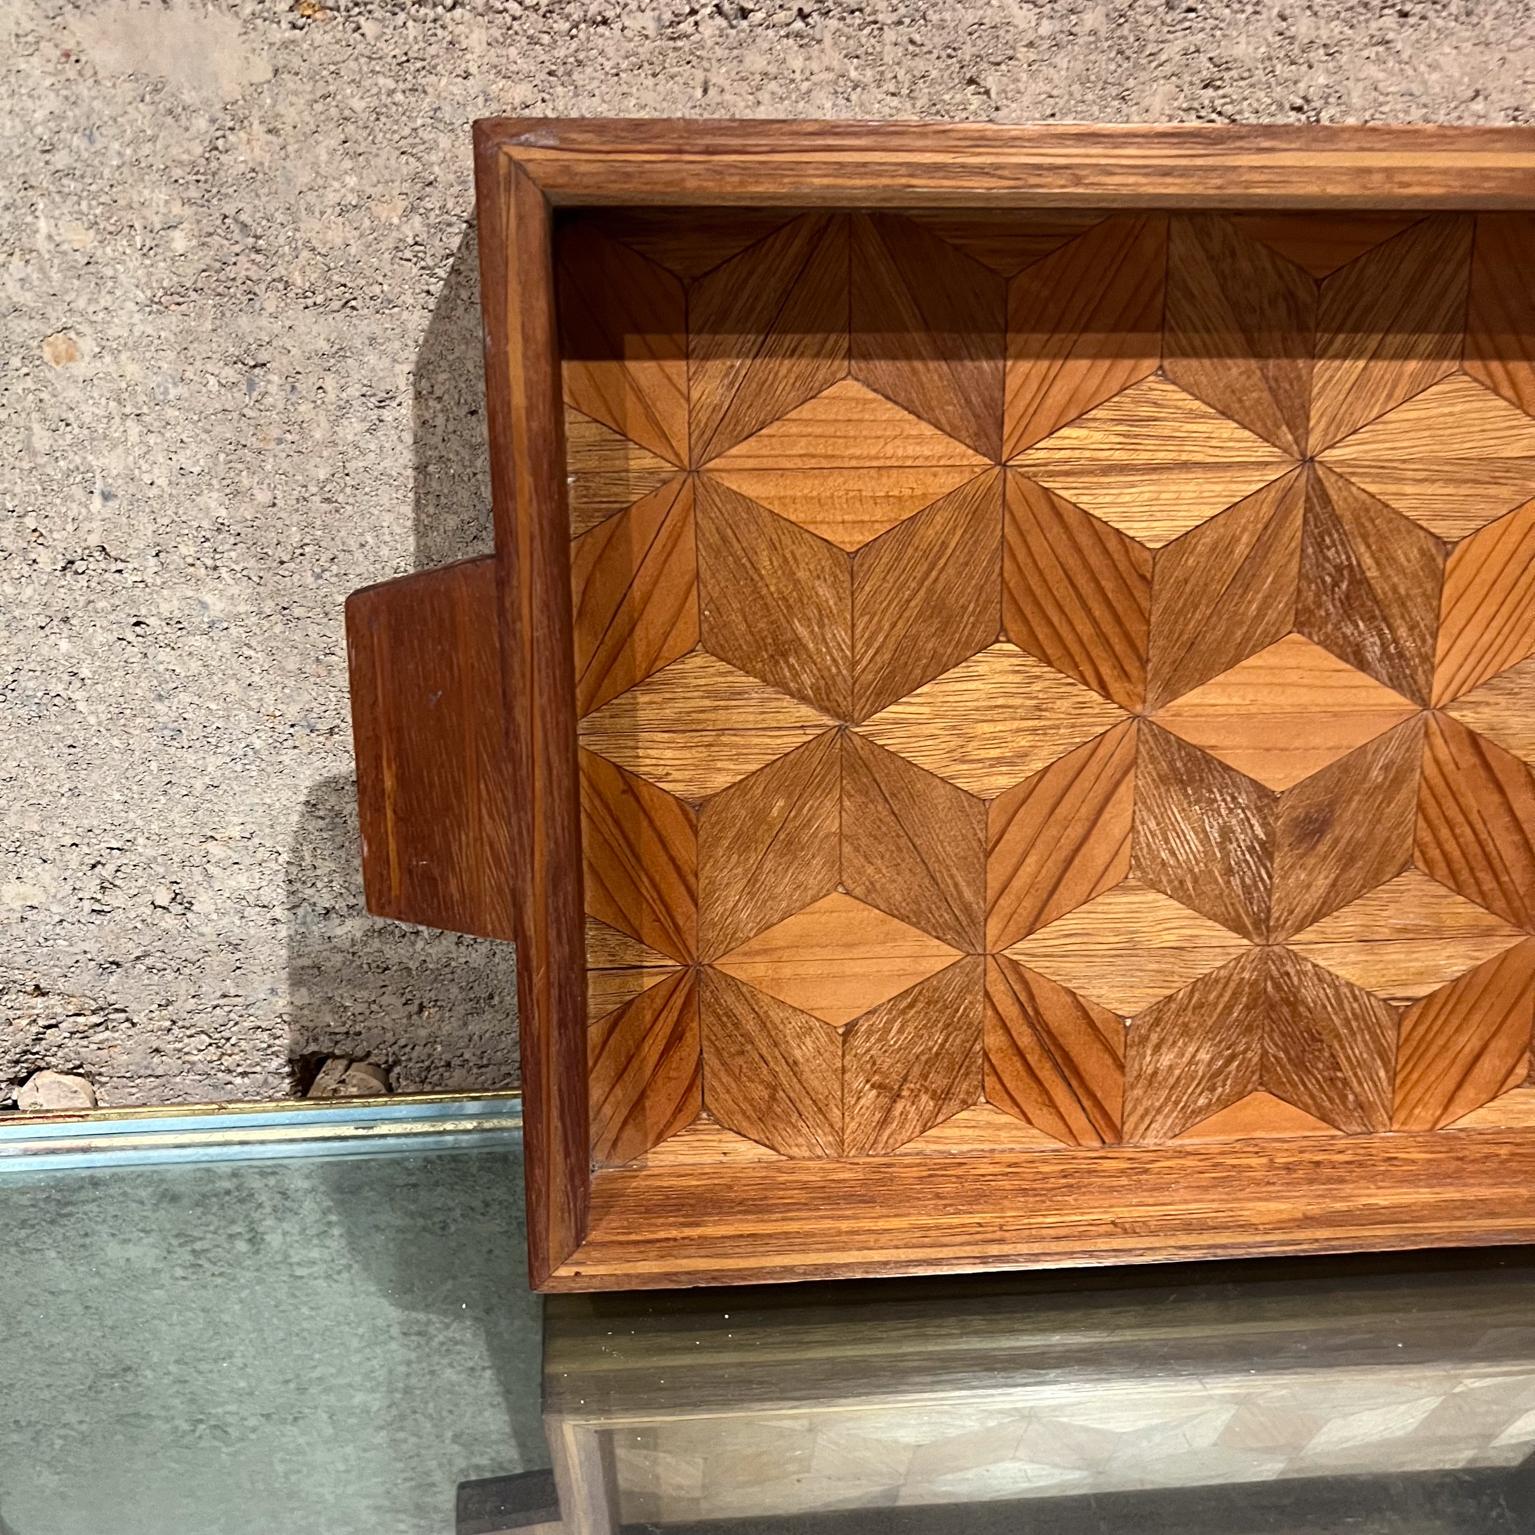 
1960er Jahre Midcentury Modern Holz Serviertablett Geometrisches Design
Im Stil von Don Shoemaker
9,75 d x 16,5 lang x 1,5
Gebraucht Original Vintage Zustand
Alle Bilder anzeigen.